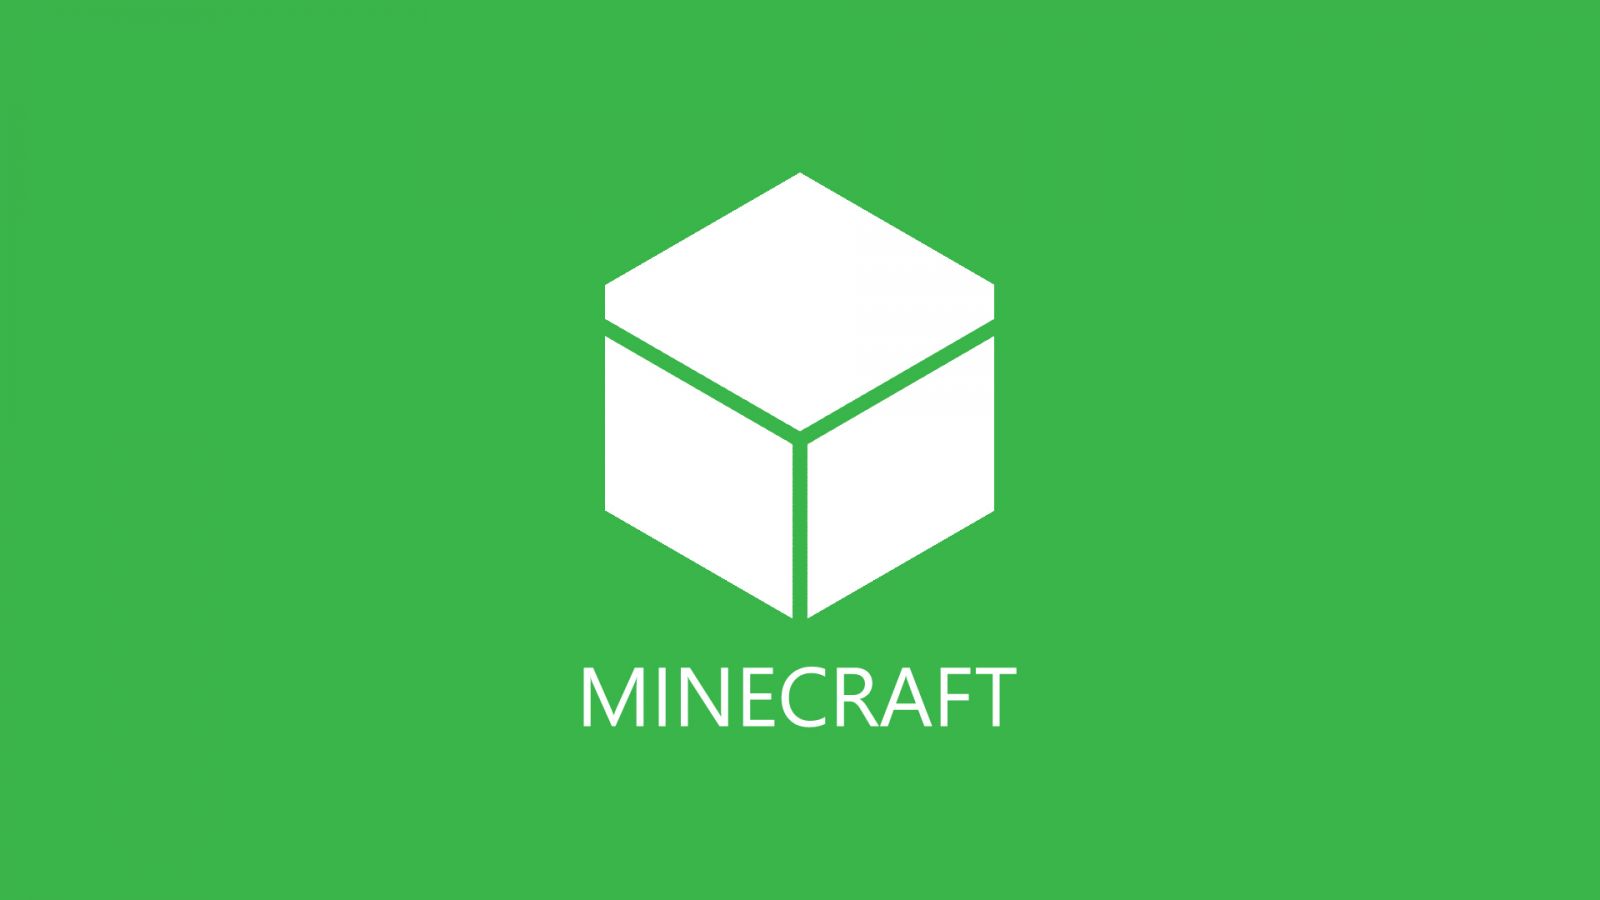 Windows 8 Minecraft Logo